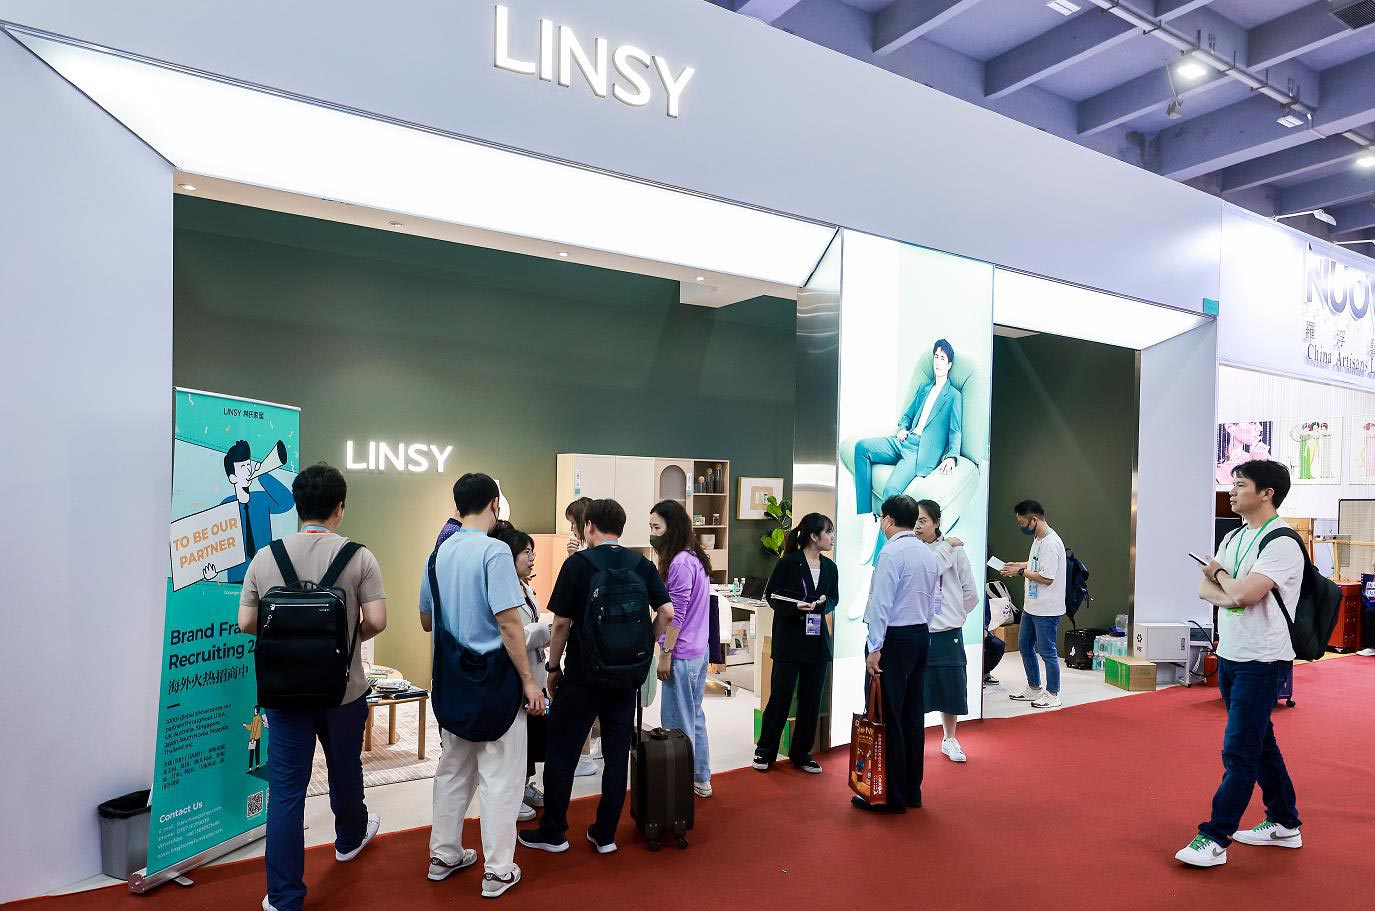 LINSY ביריד היבוא והיצוא ה-133 של סין